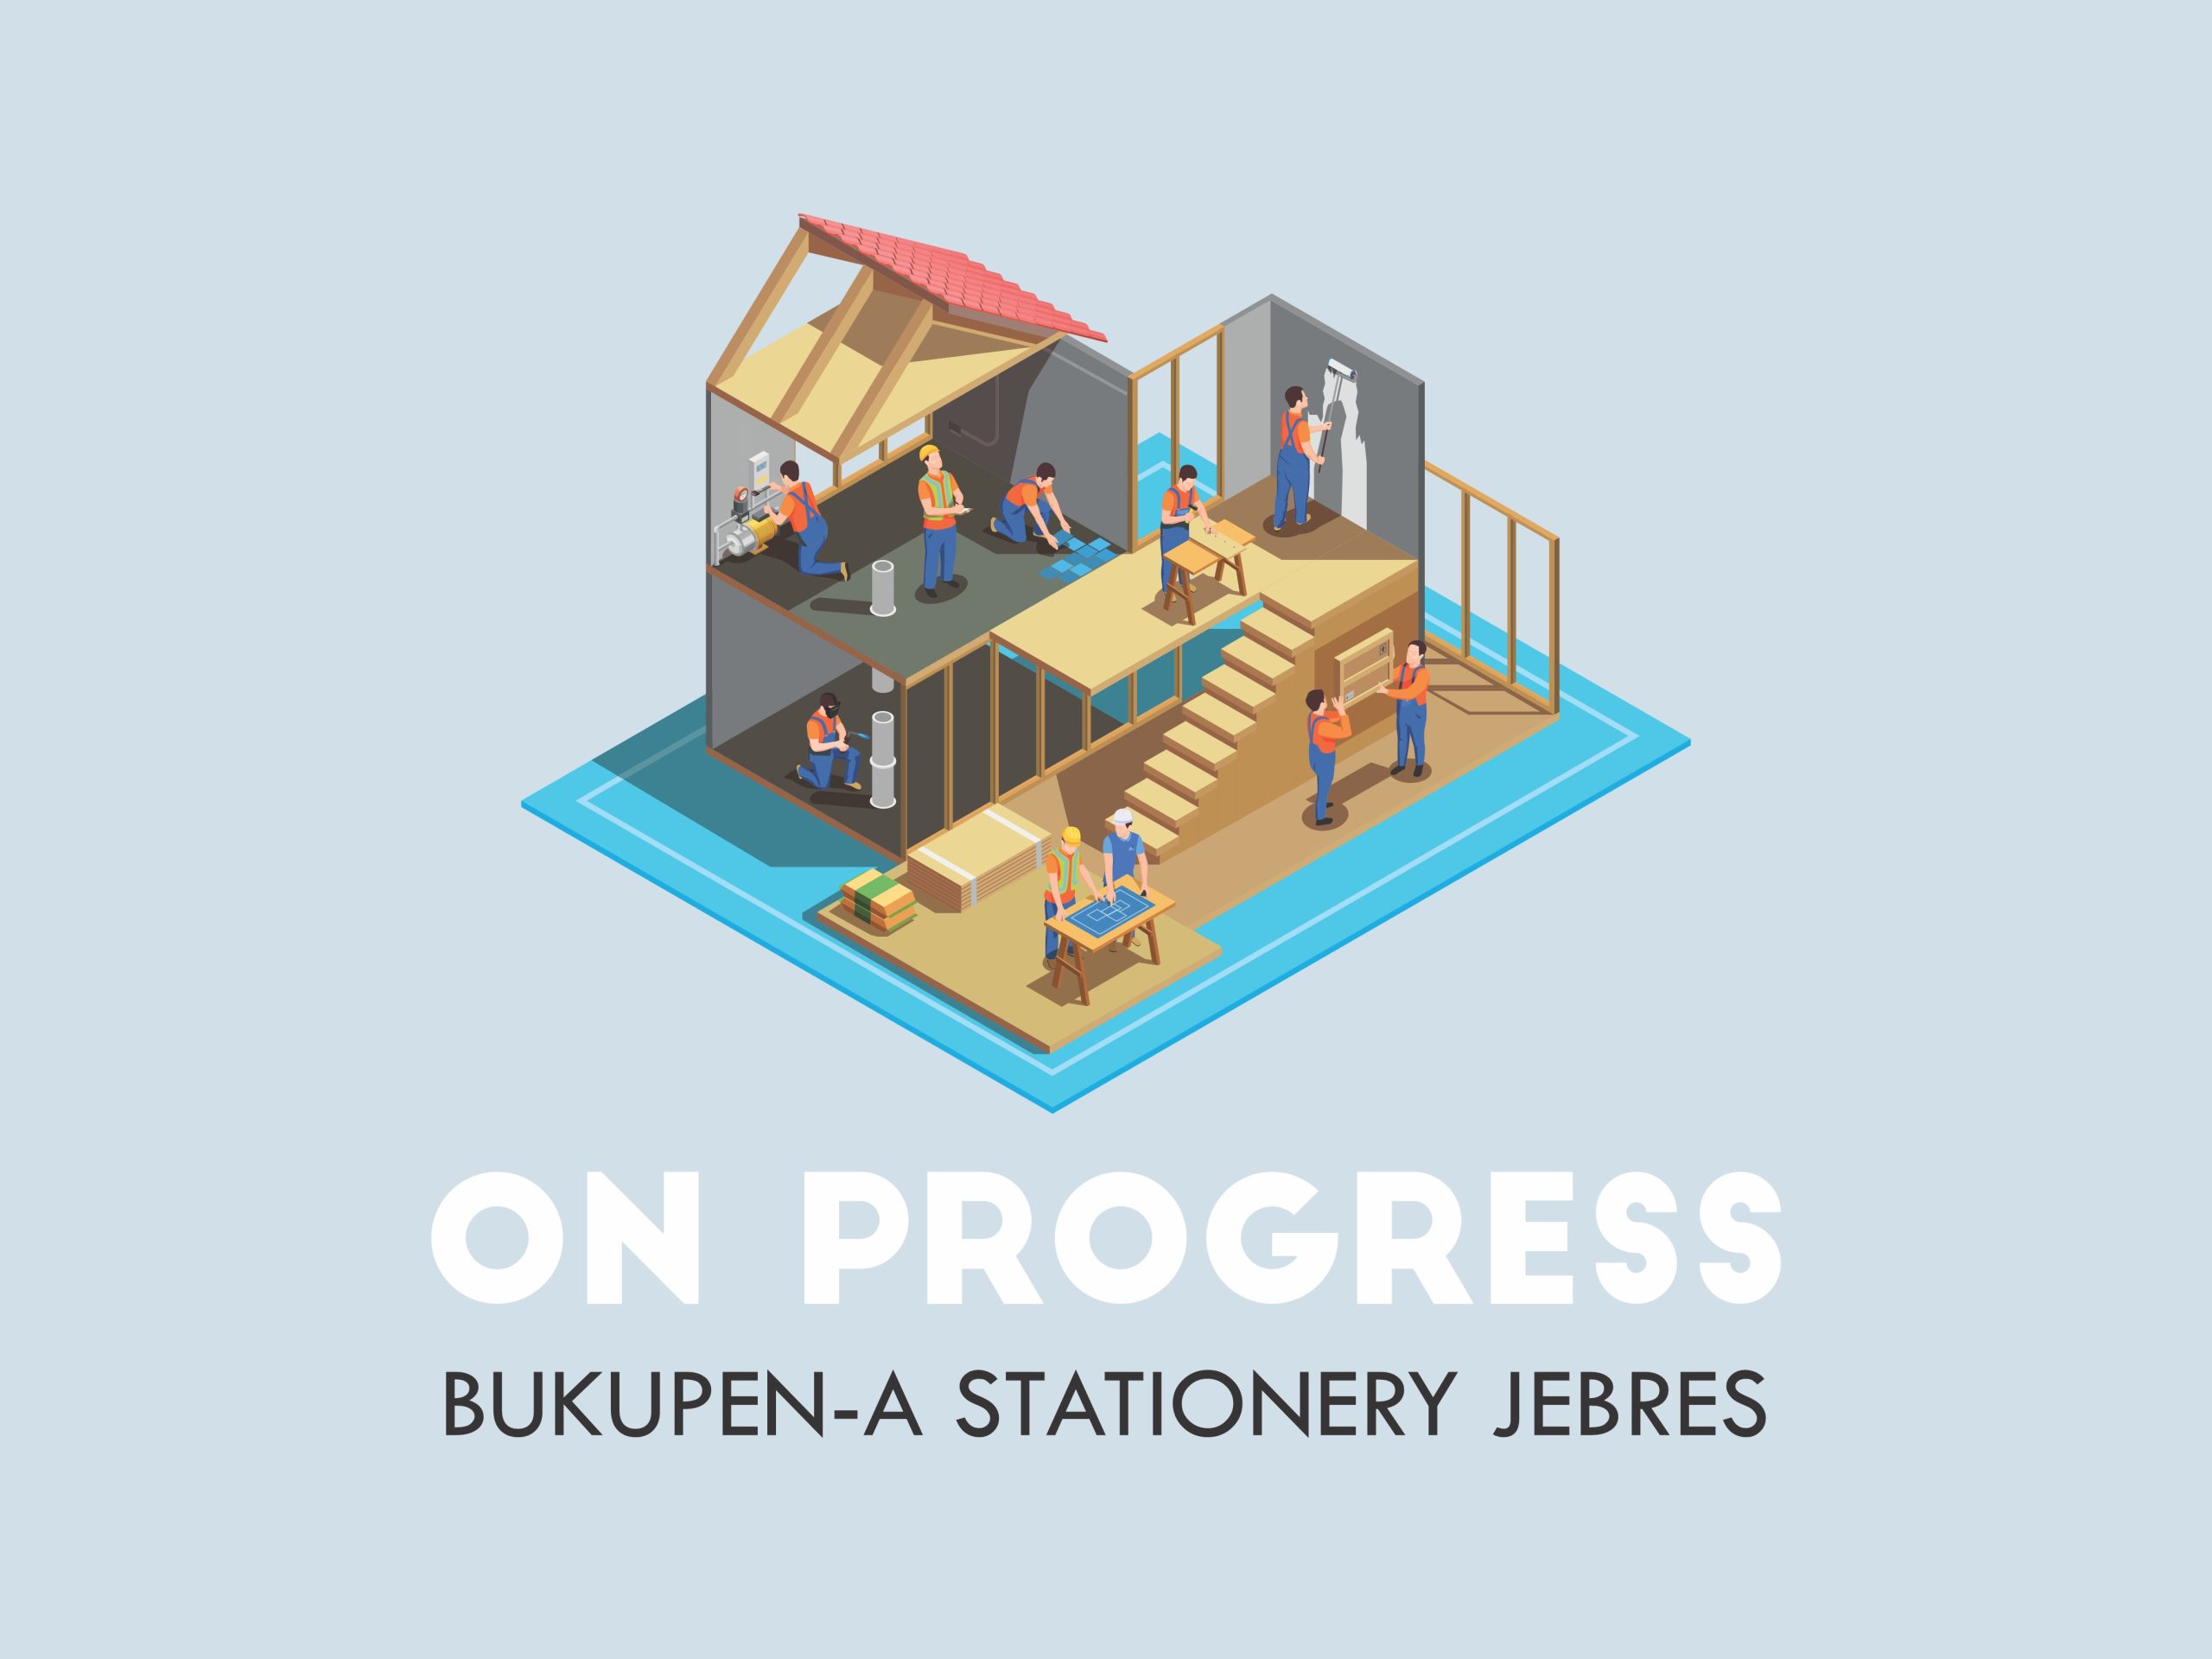 On Progress: Bukupen-a Stationery Jebres